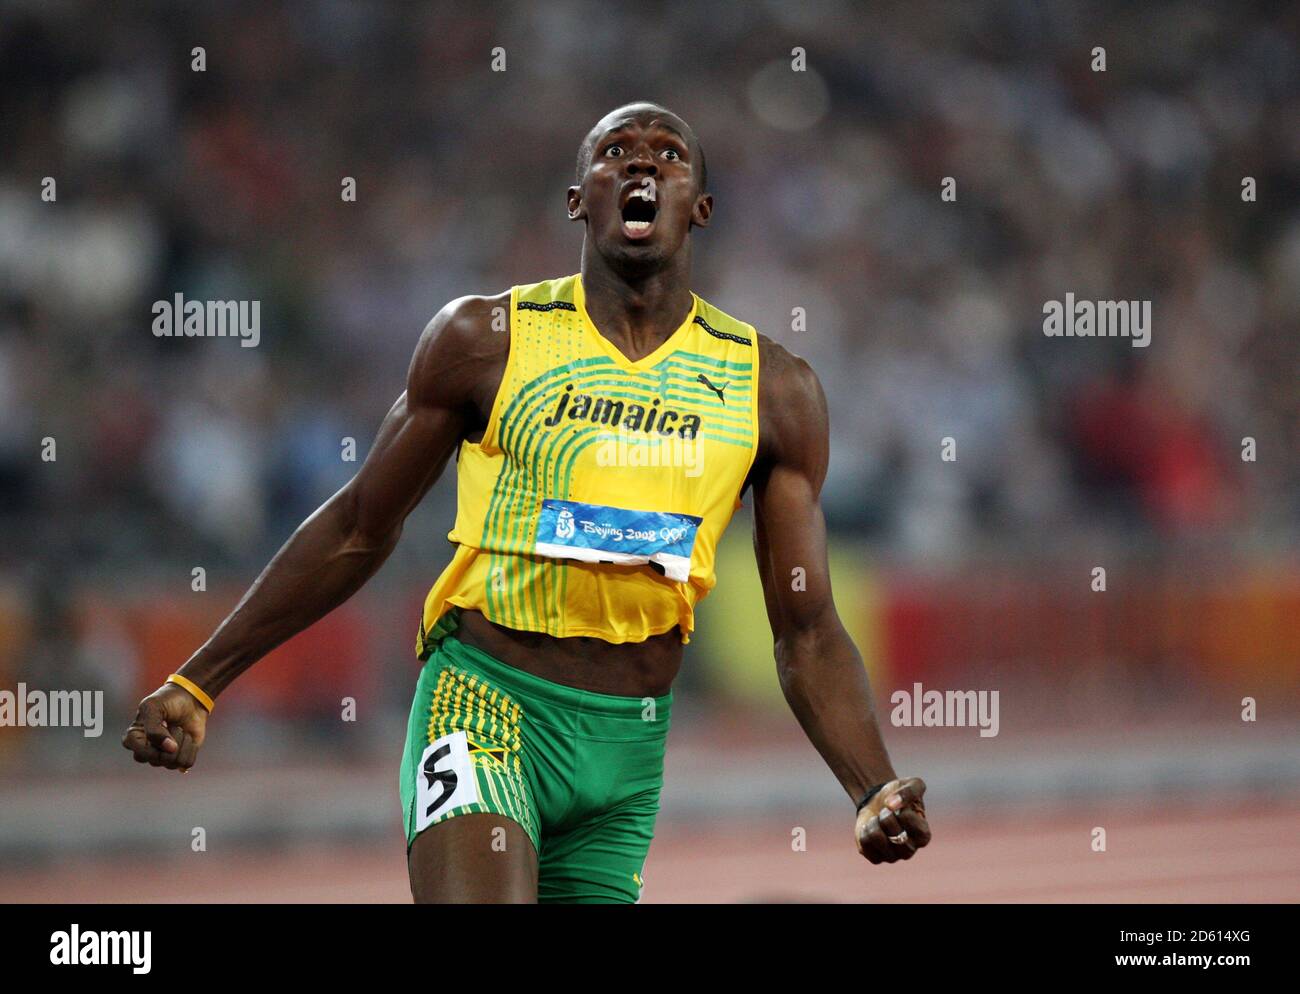 Datei Foto: Usain Bolt probiert für die australische Fußballmannschaft Central Coast Mariners aus. Jamaikas Usain Bolt feiert den Sieg im 200-m-Finale der Männer. ... Olympische Spiele - Peking Olympische Spiele 2008 - Tag Zwölf ... 20-08-2008 ... Peking ... China ... Bildnachweis sollte lauten: John Walton/EMPICS Sport. Eindeutige Referenz-Nr. 6259398 ... Stockfoto